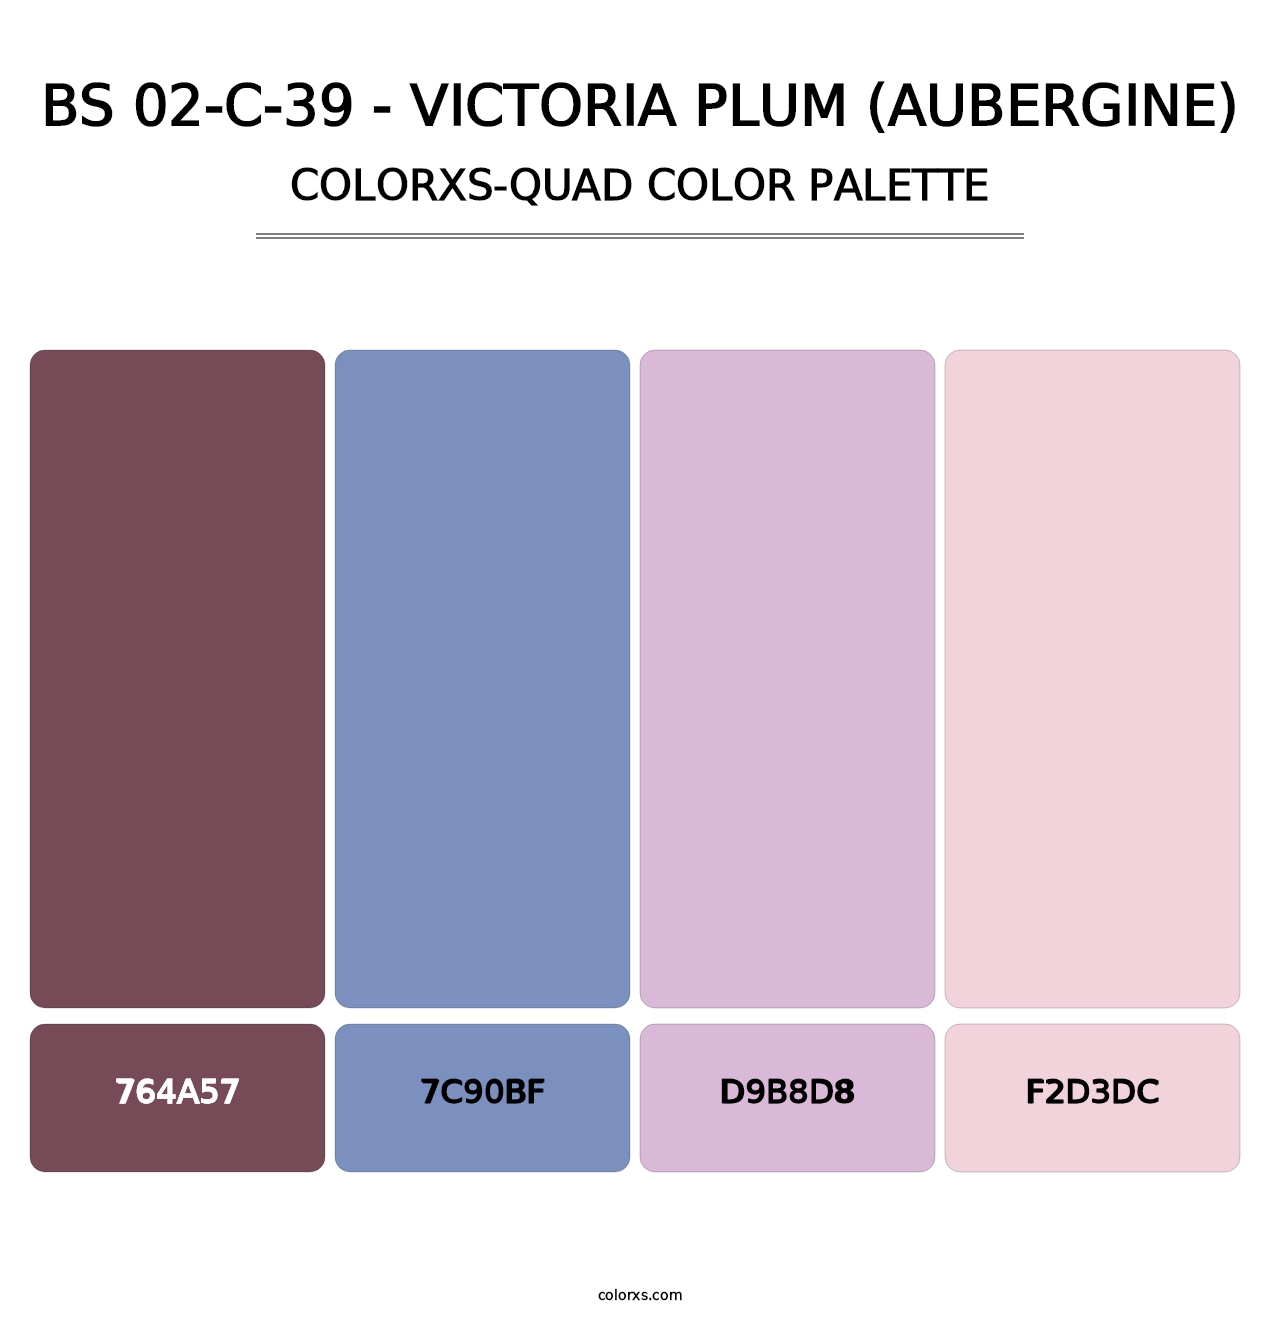 BS 02-C-39 - Victoria Plum (Aubergine) - Colorxs Quad Palette